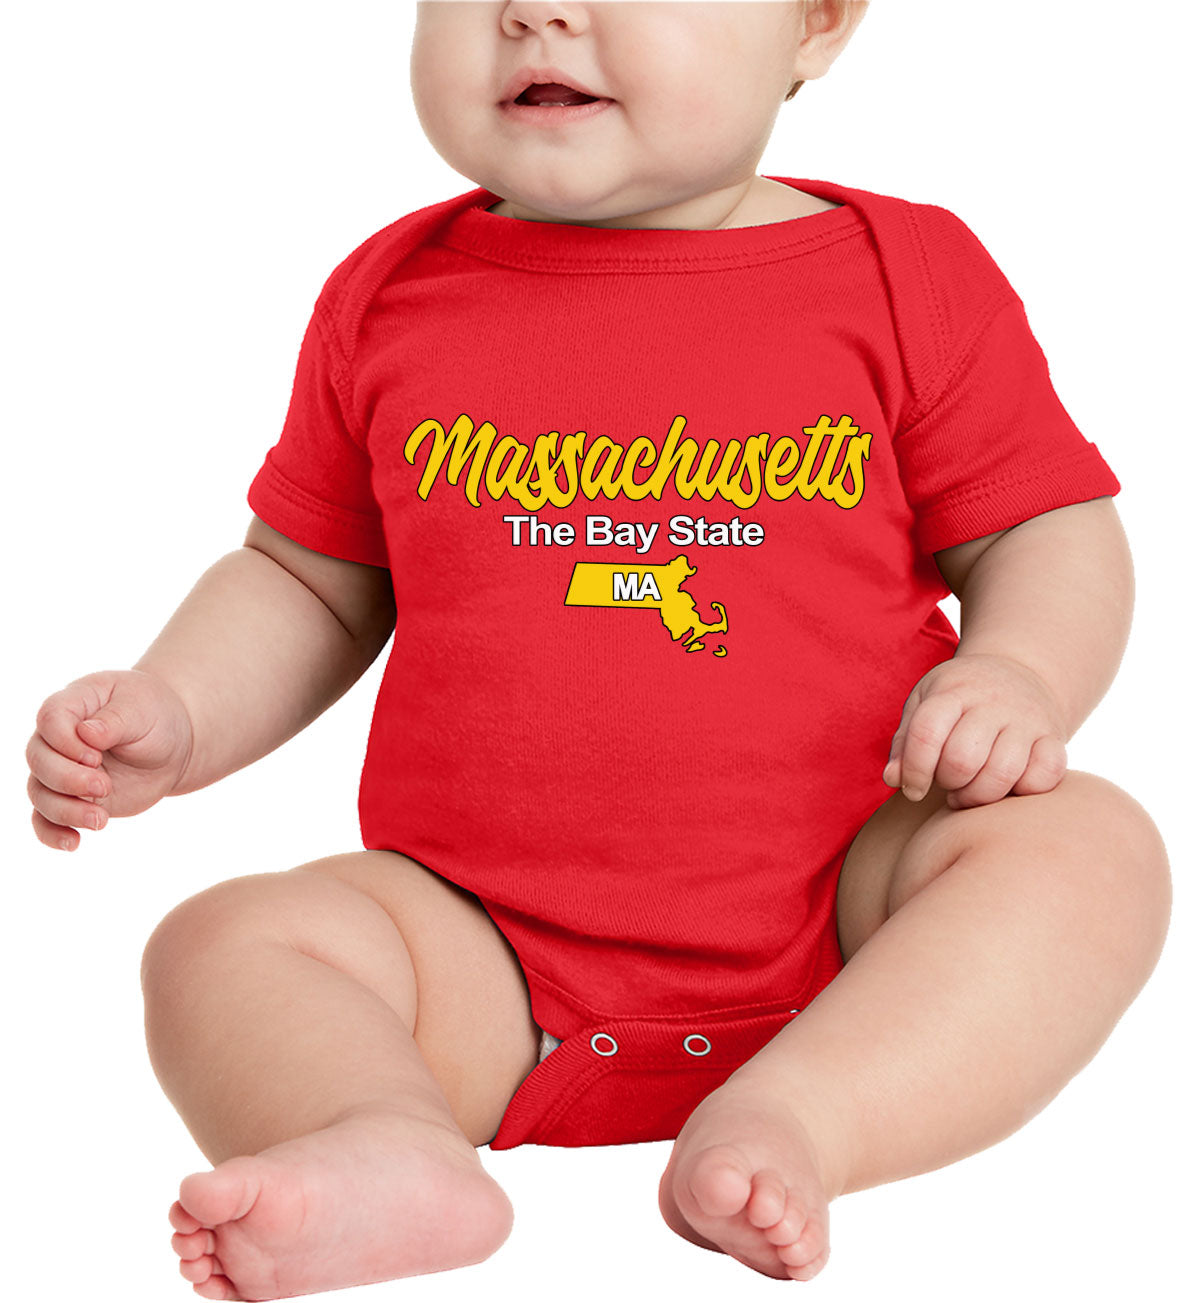 Massachusetts The Bay State Baby Onesie